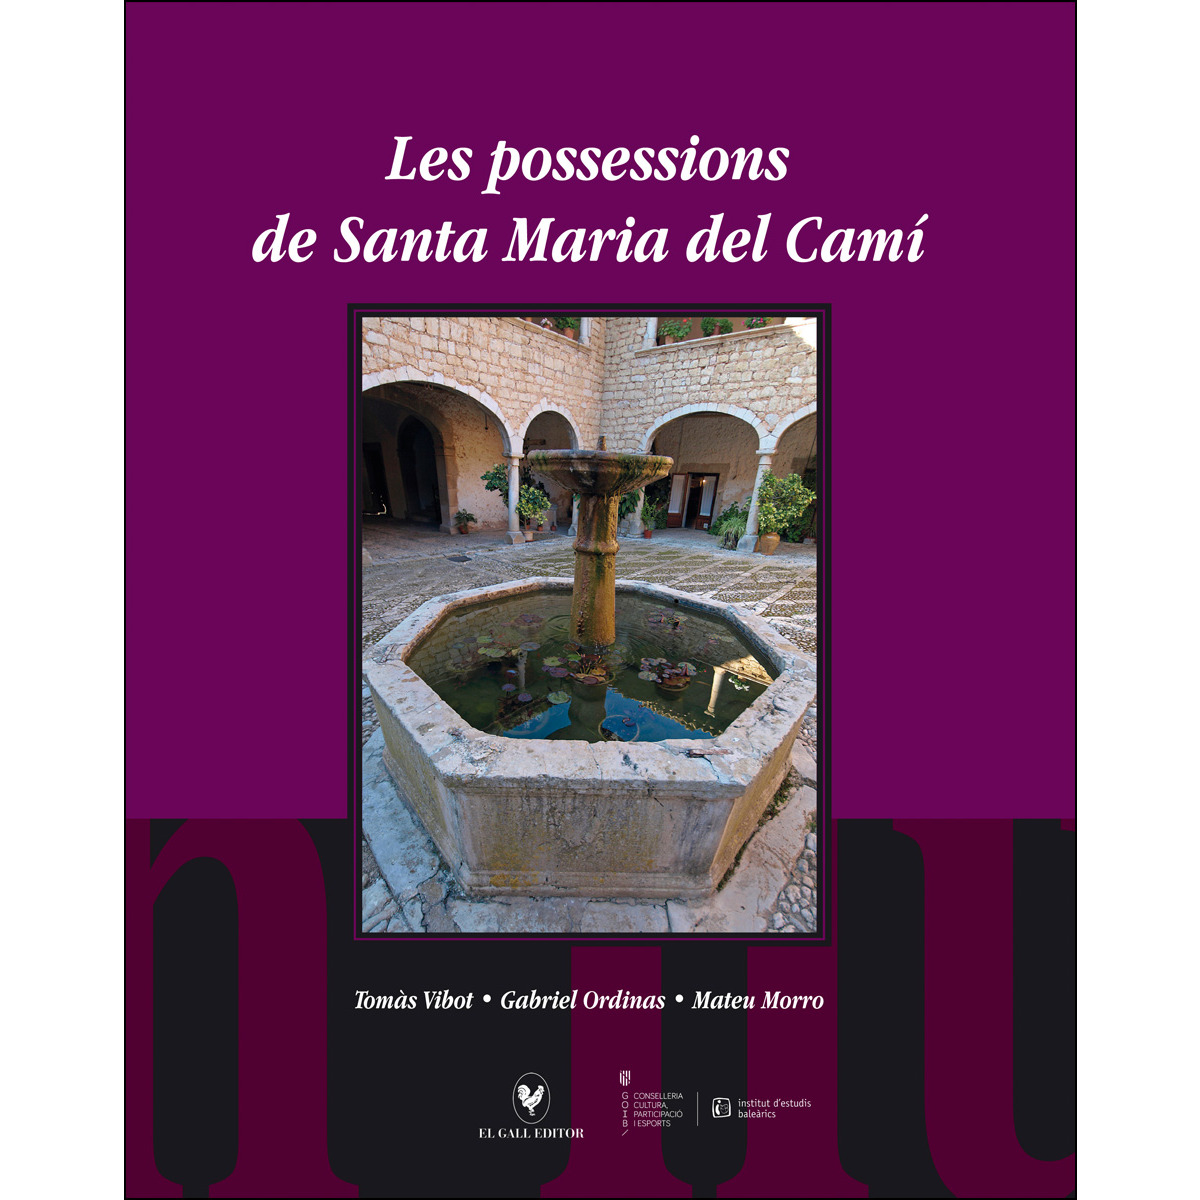 Les possessions de Santa Maria del Camí